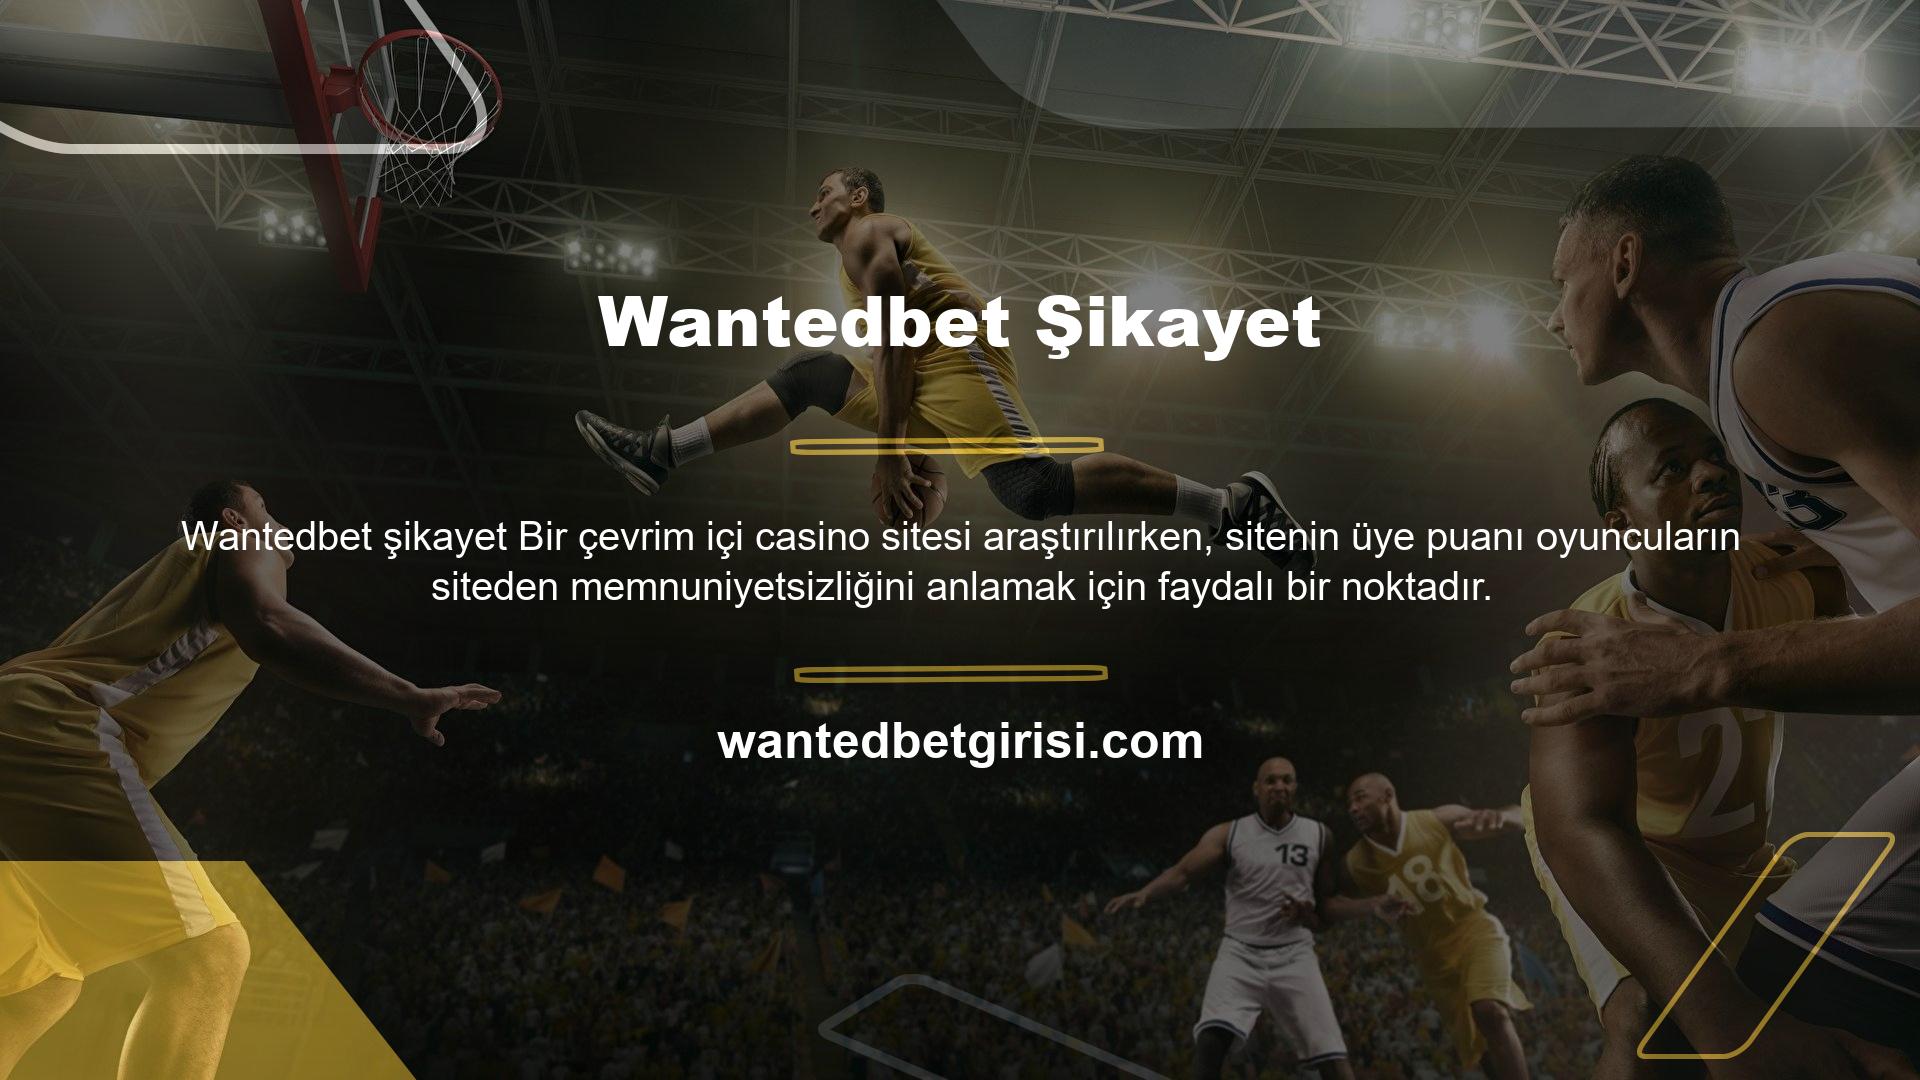 Wantedbet üyelerinden gelen yorumlar, Wantedbet online casino sitesine üye olmak isteyenler veya site ile ilgilenenler için oldukça faydalı oluyor